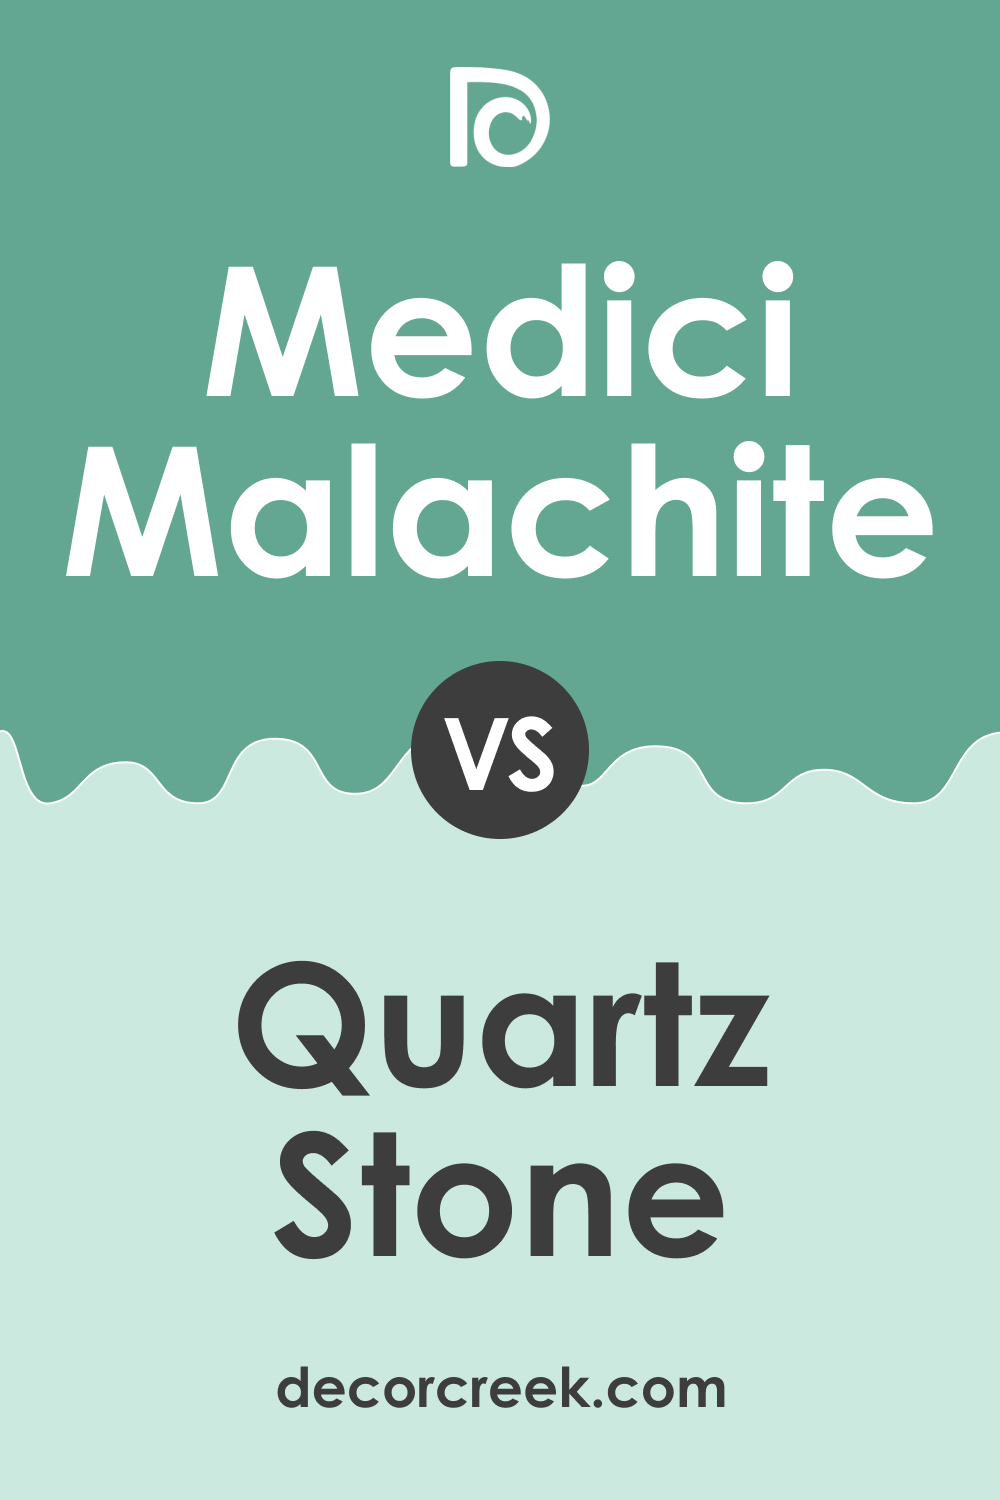 Medici Malachite 600 vs. BM 597 Quartz Stone